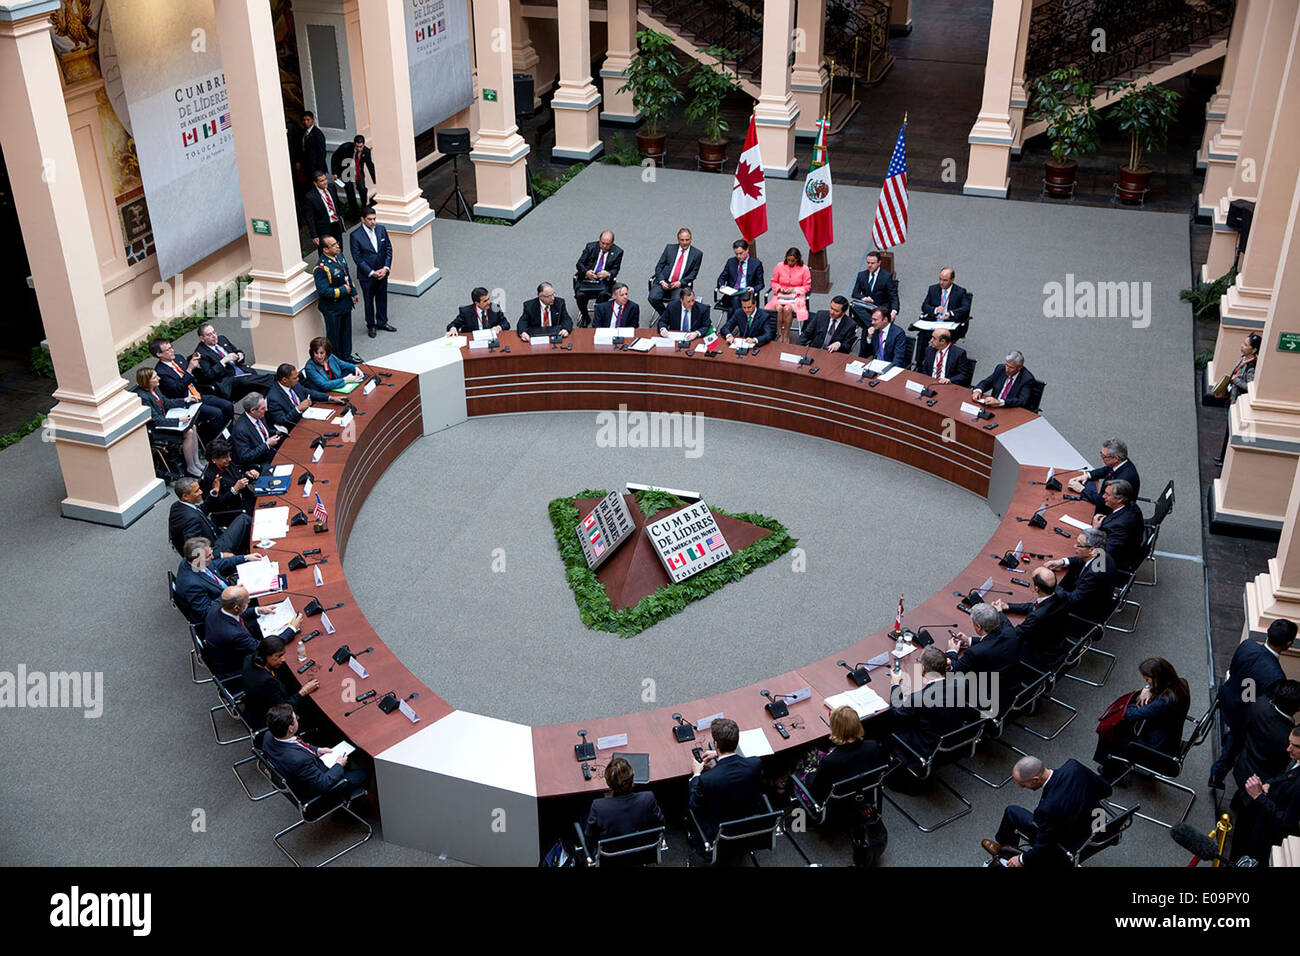 Vue de dessus comme le président américain Barack Obama rencontre le Président Enrique Peña Nieto, du Mexique et le Premier ministre Stephen Harper du Canada, au Palacio de Justicia lors du Sommet des dirigeants nord-américains le 19 février 2014 à Toluca, Mexique. Banque D'Images